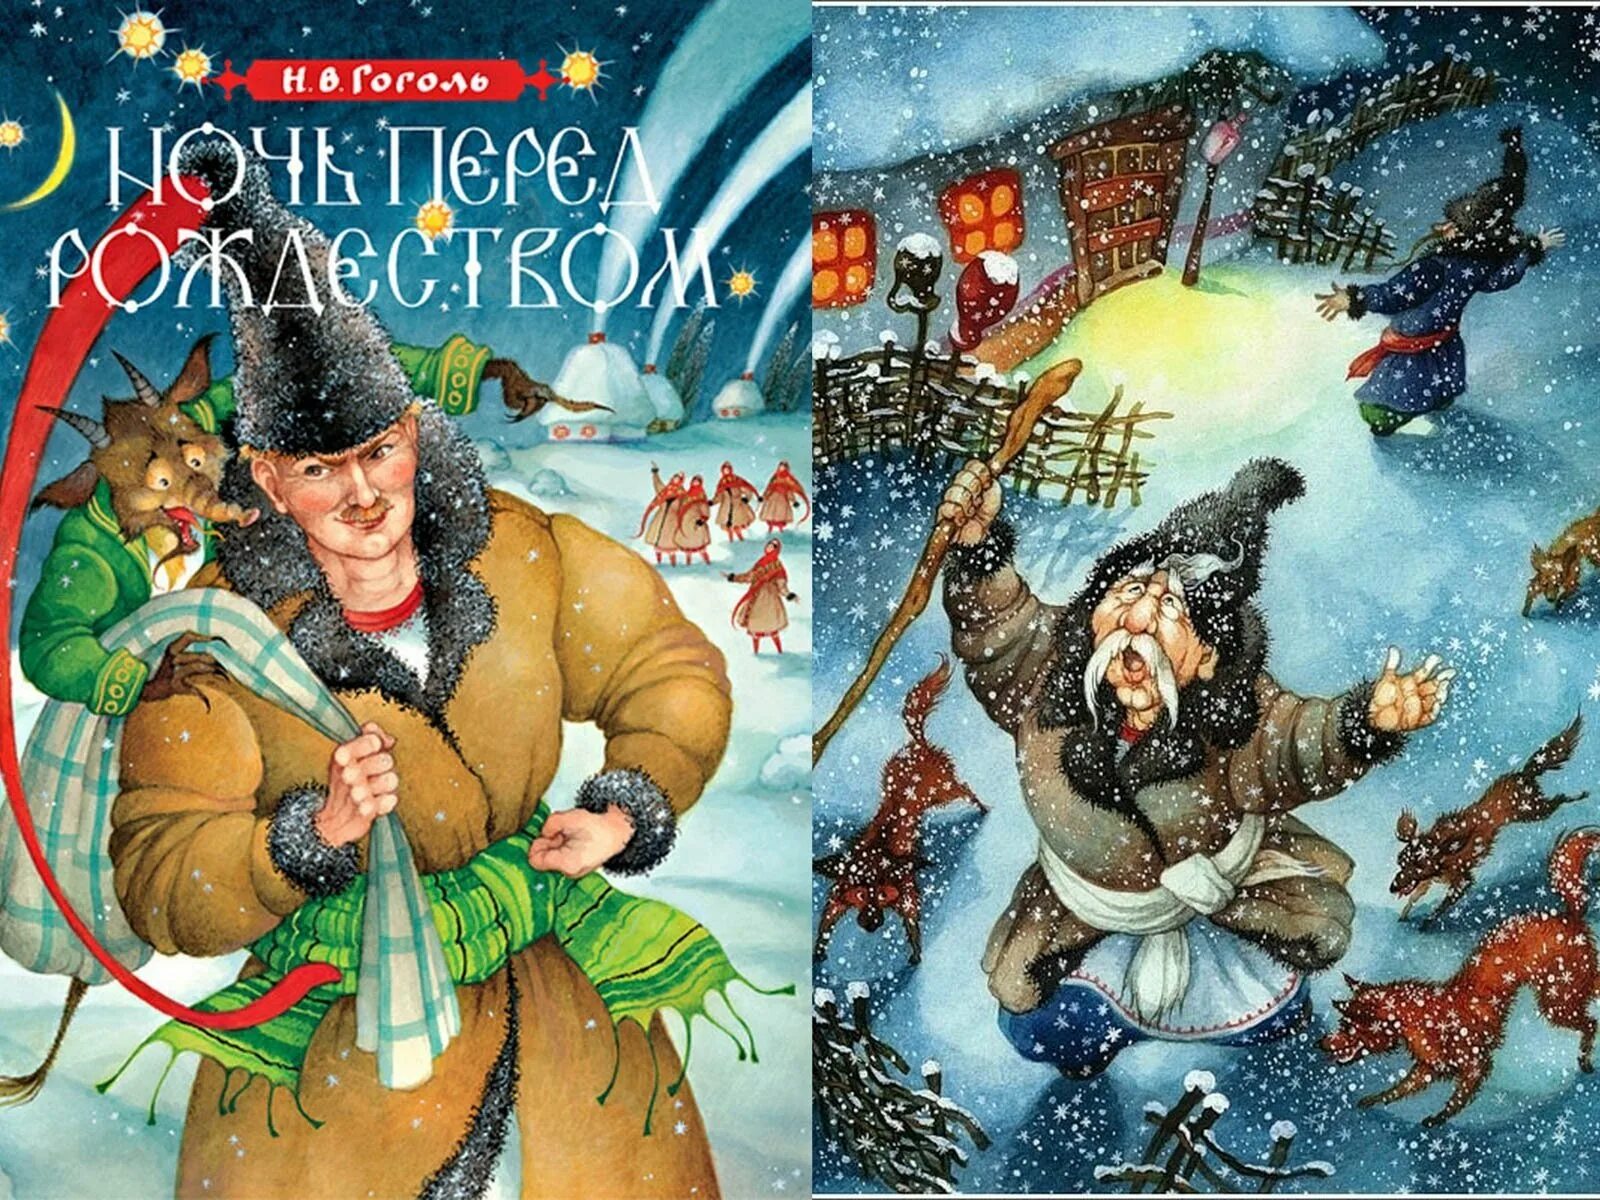 Иллюстрации к произведениям н в гоголя. Н В Гоголь ночь перед Рождеством. Иллюстрации к книге Гоголя ночь перед Рождеством. Иллюстрацию к произведению н.в.Гоголя "ночь перед Рождеством".